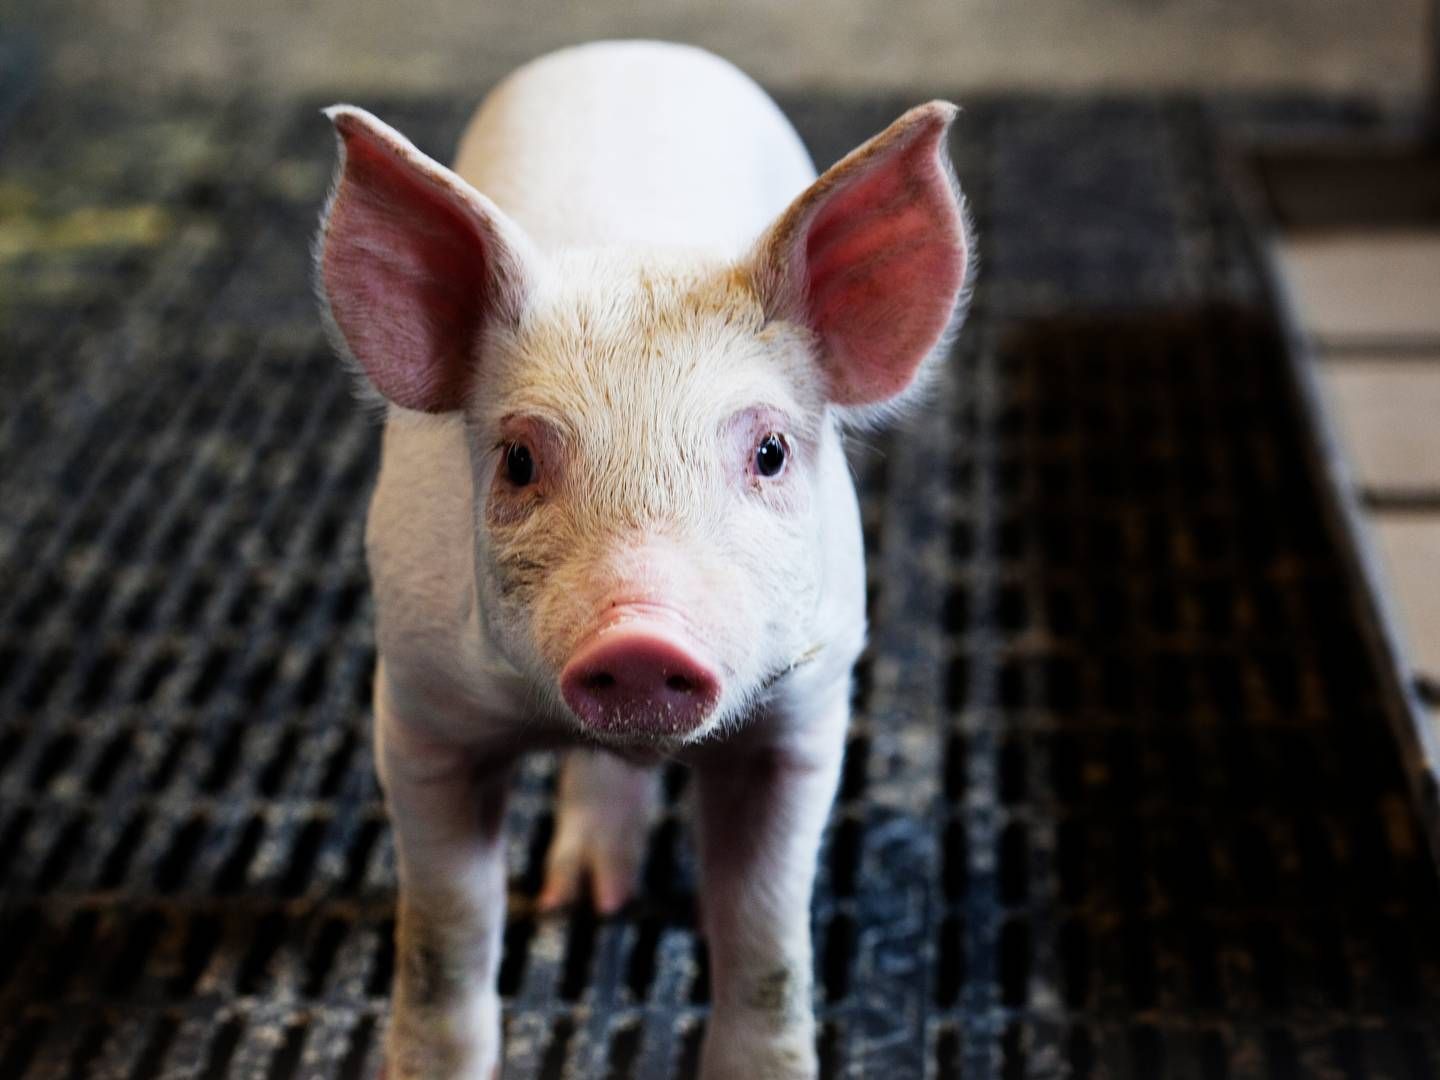 Det seneste år har flere kinesiske svineproducenter set prisen på svin falde grundet øget svineproduktion. | Foto: Landbrug&fødevarer / Pr